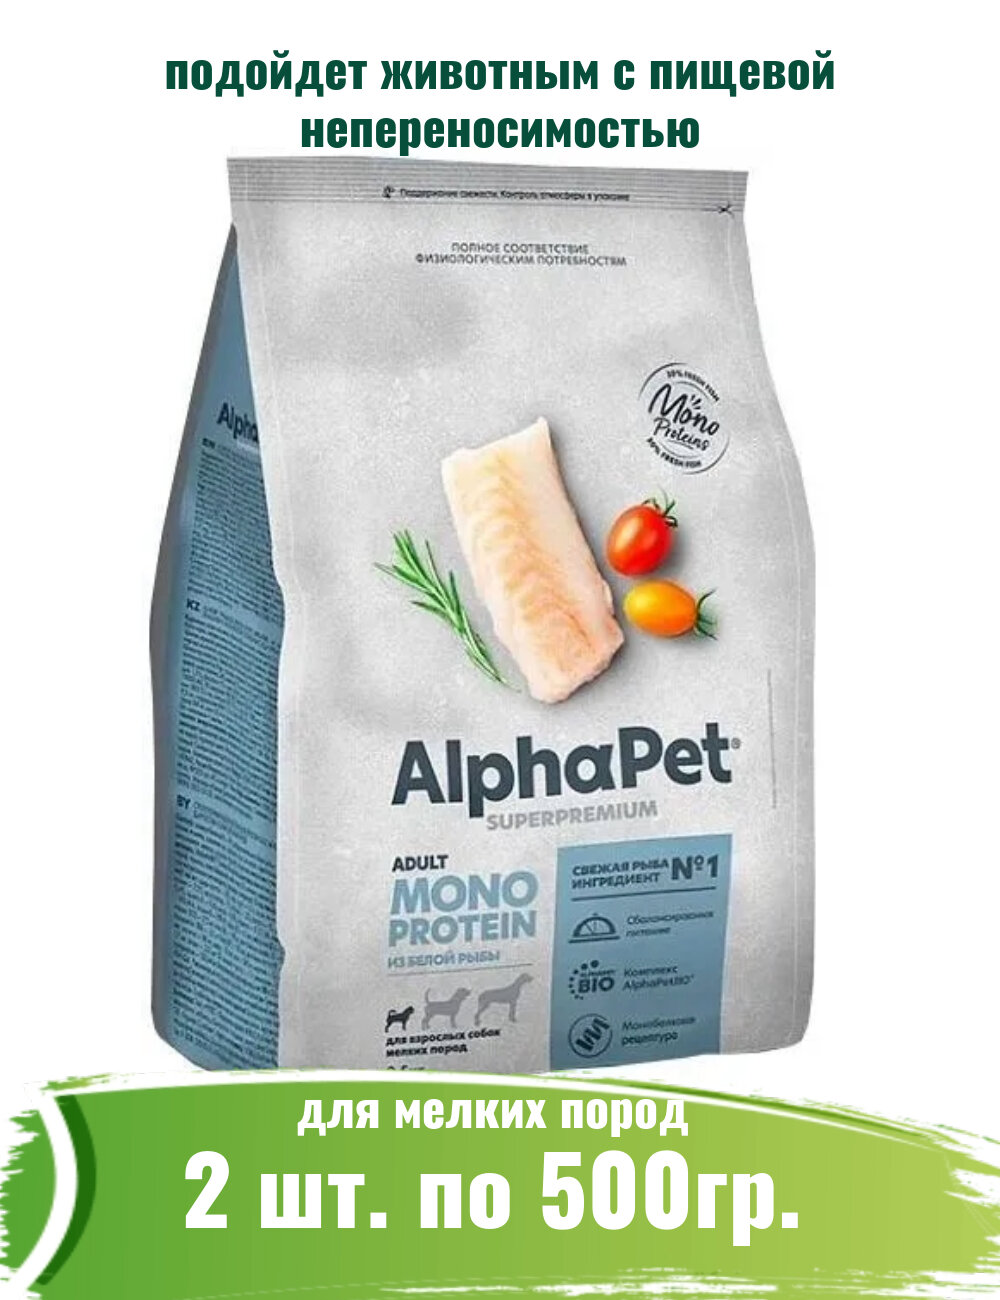 AlphaPet Superpremium Monoprotein (АльфаПет) 2шт по 500г из белой рыбы сухой для взрослых собак мелких пород